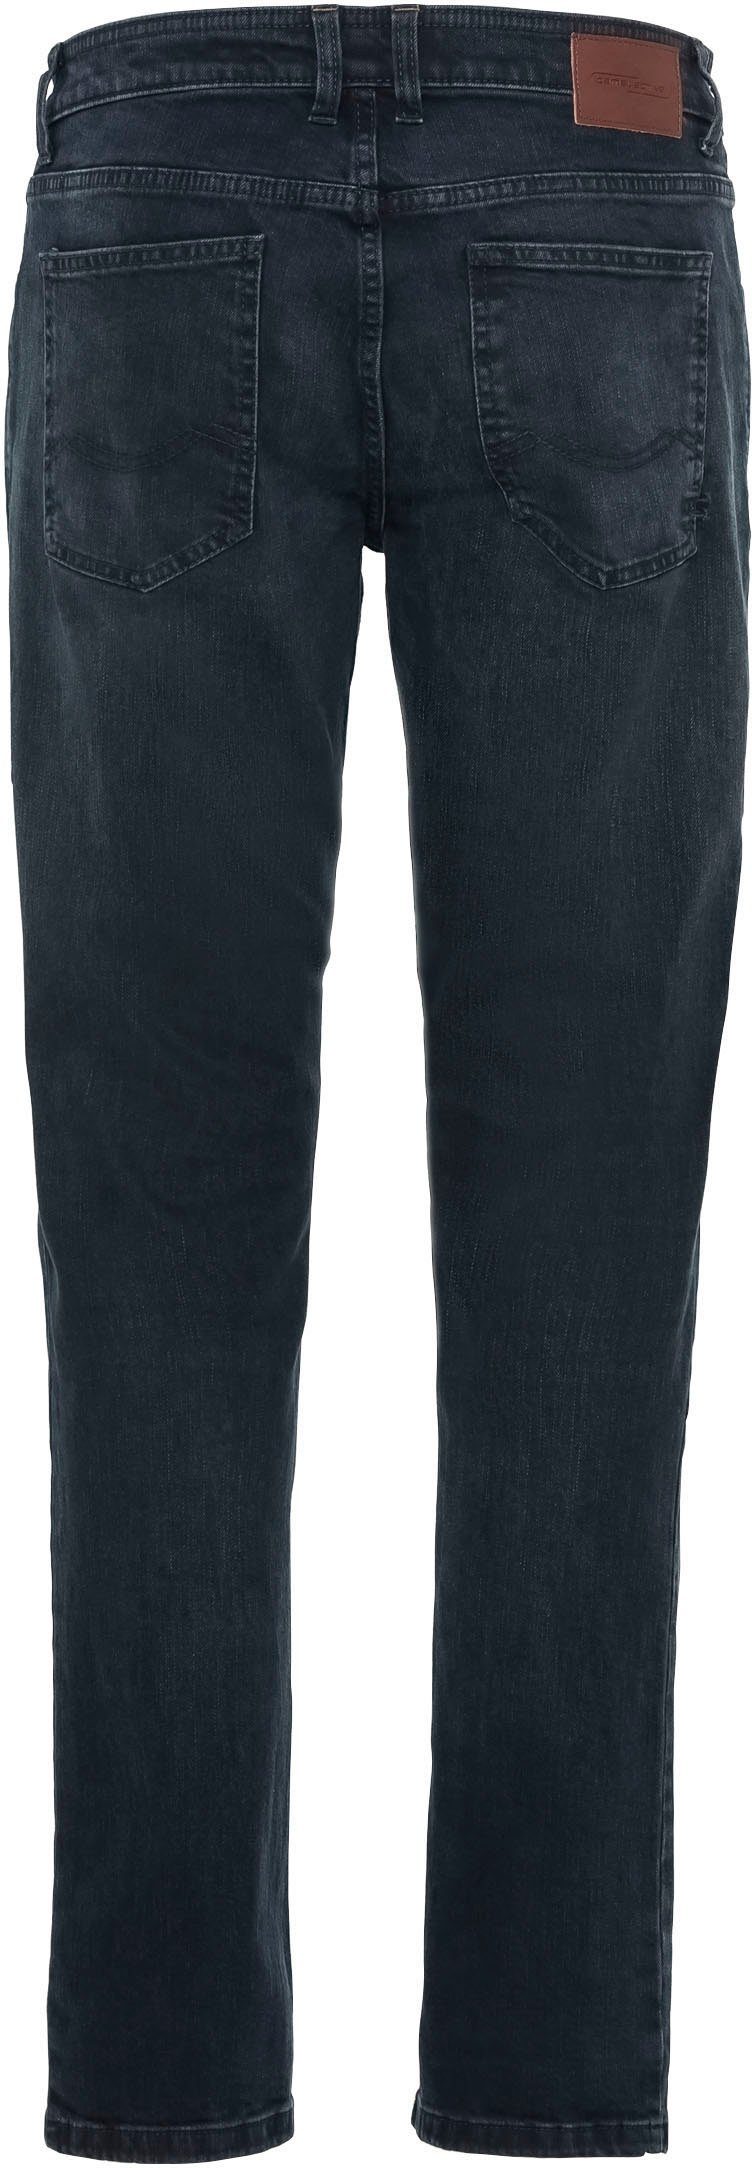 5-Pocket-Jeans dark-blue camel active WOODSTOCK